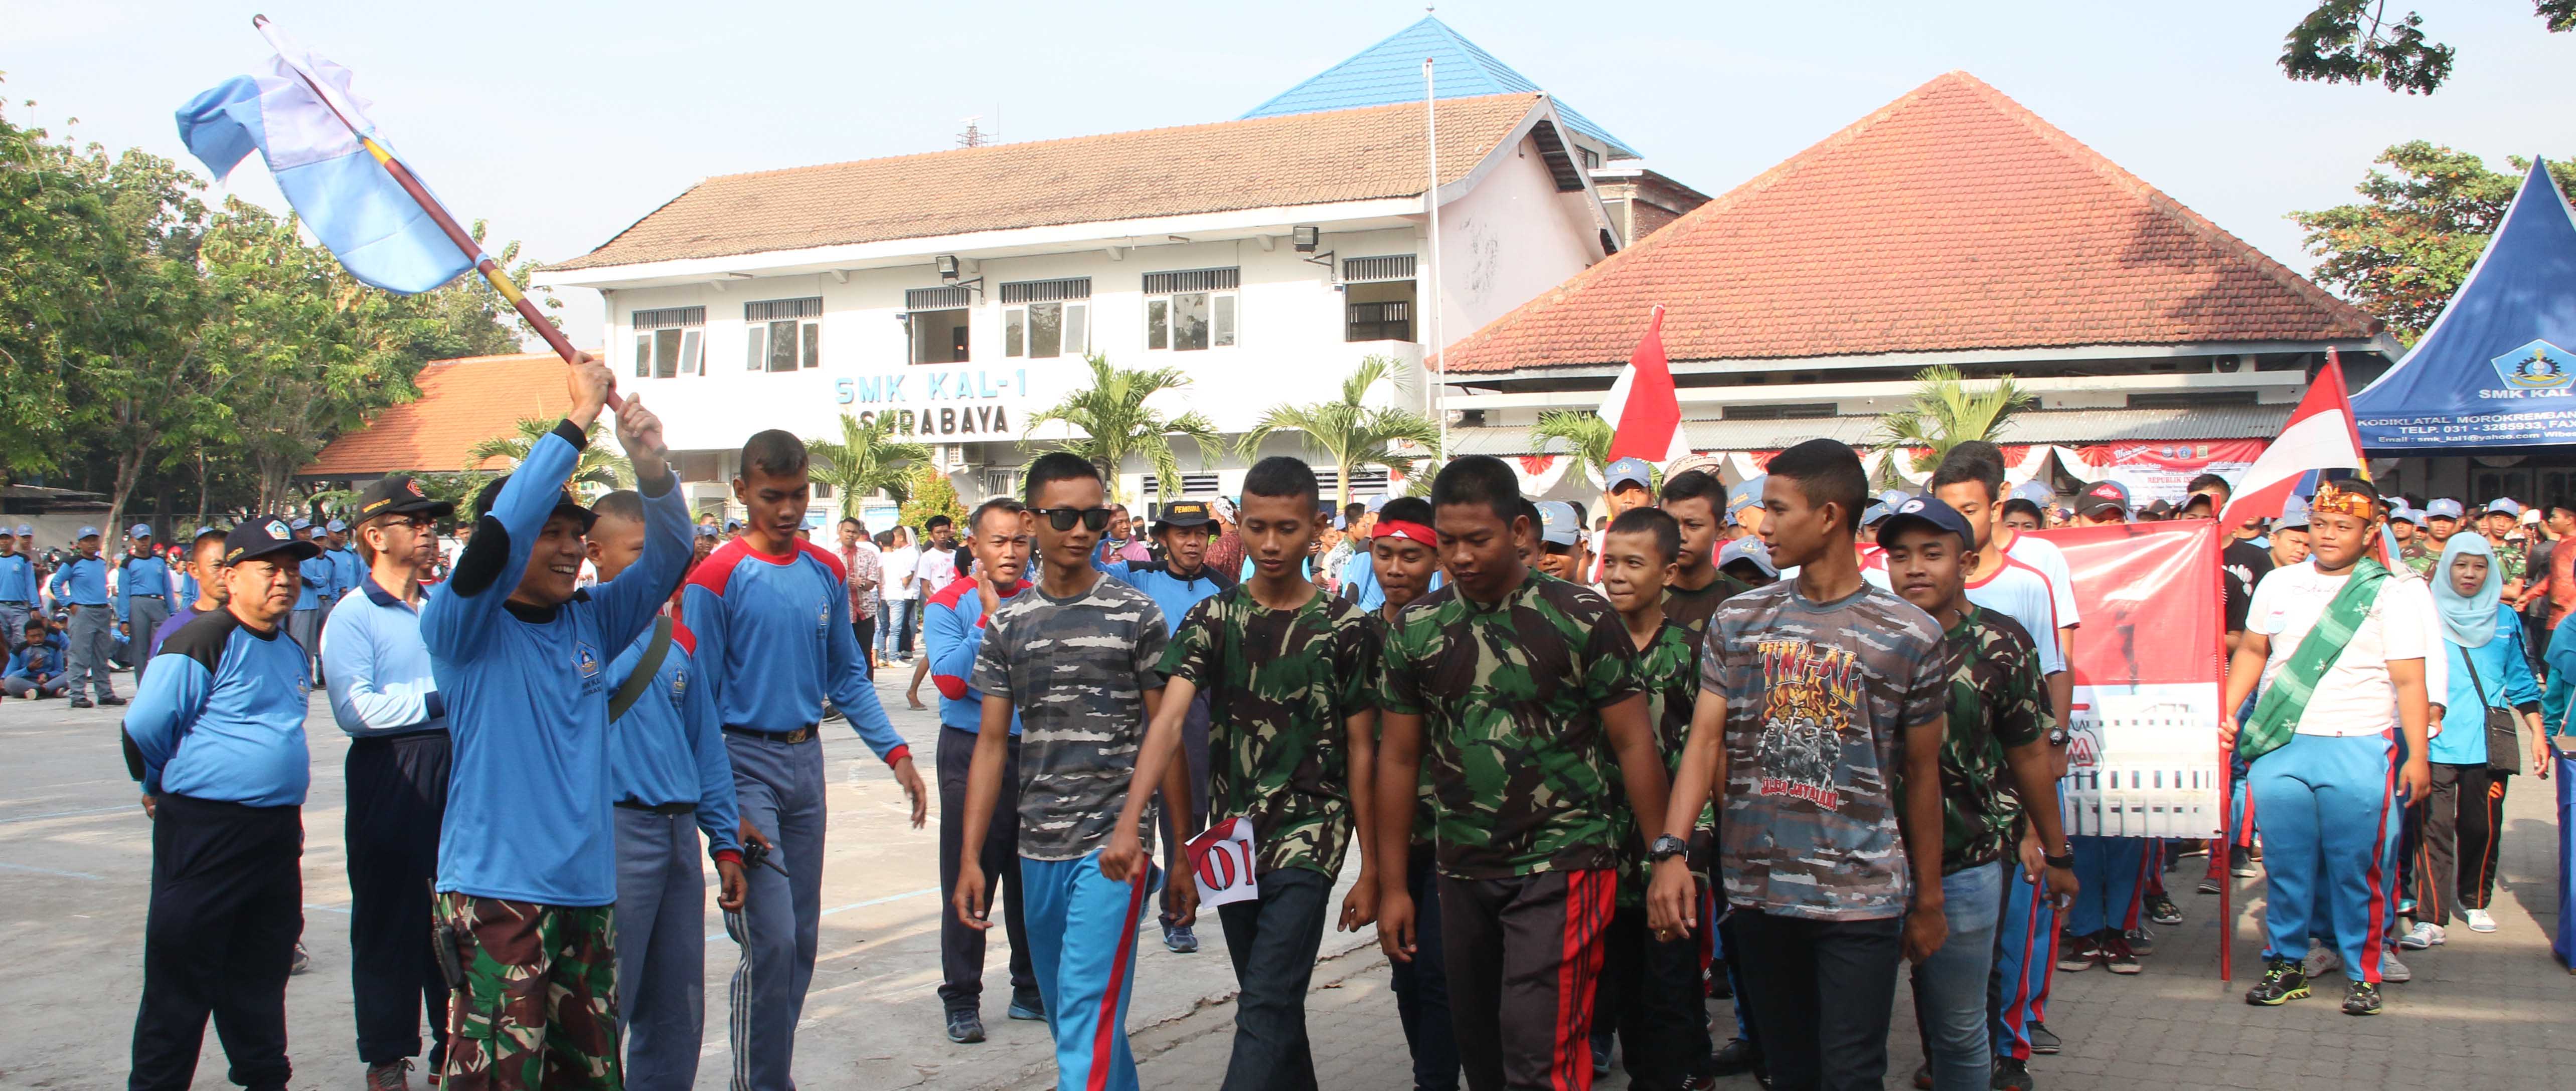 Kepala Sekolah SMK KAL-1 Drs Burhan,M.Pd  melepas peserta karnaval dalam rangka pringatan HUT Kemerdekaan RI ke-72